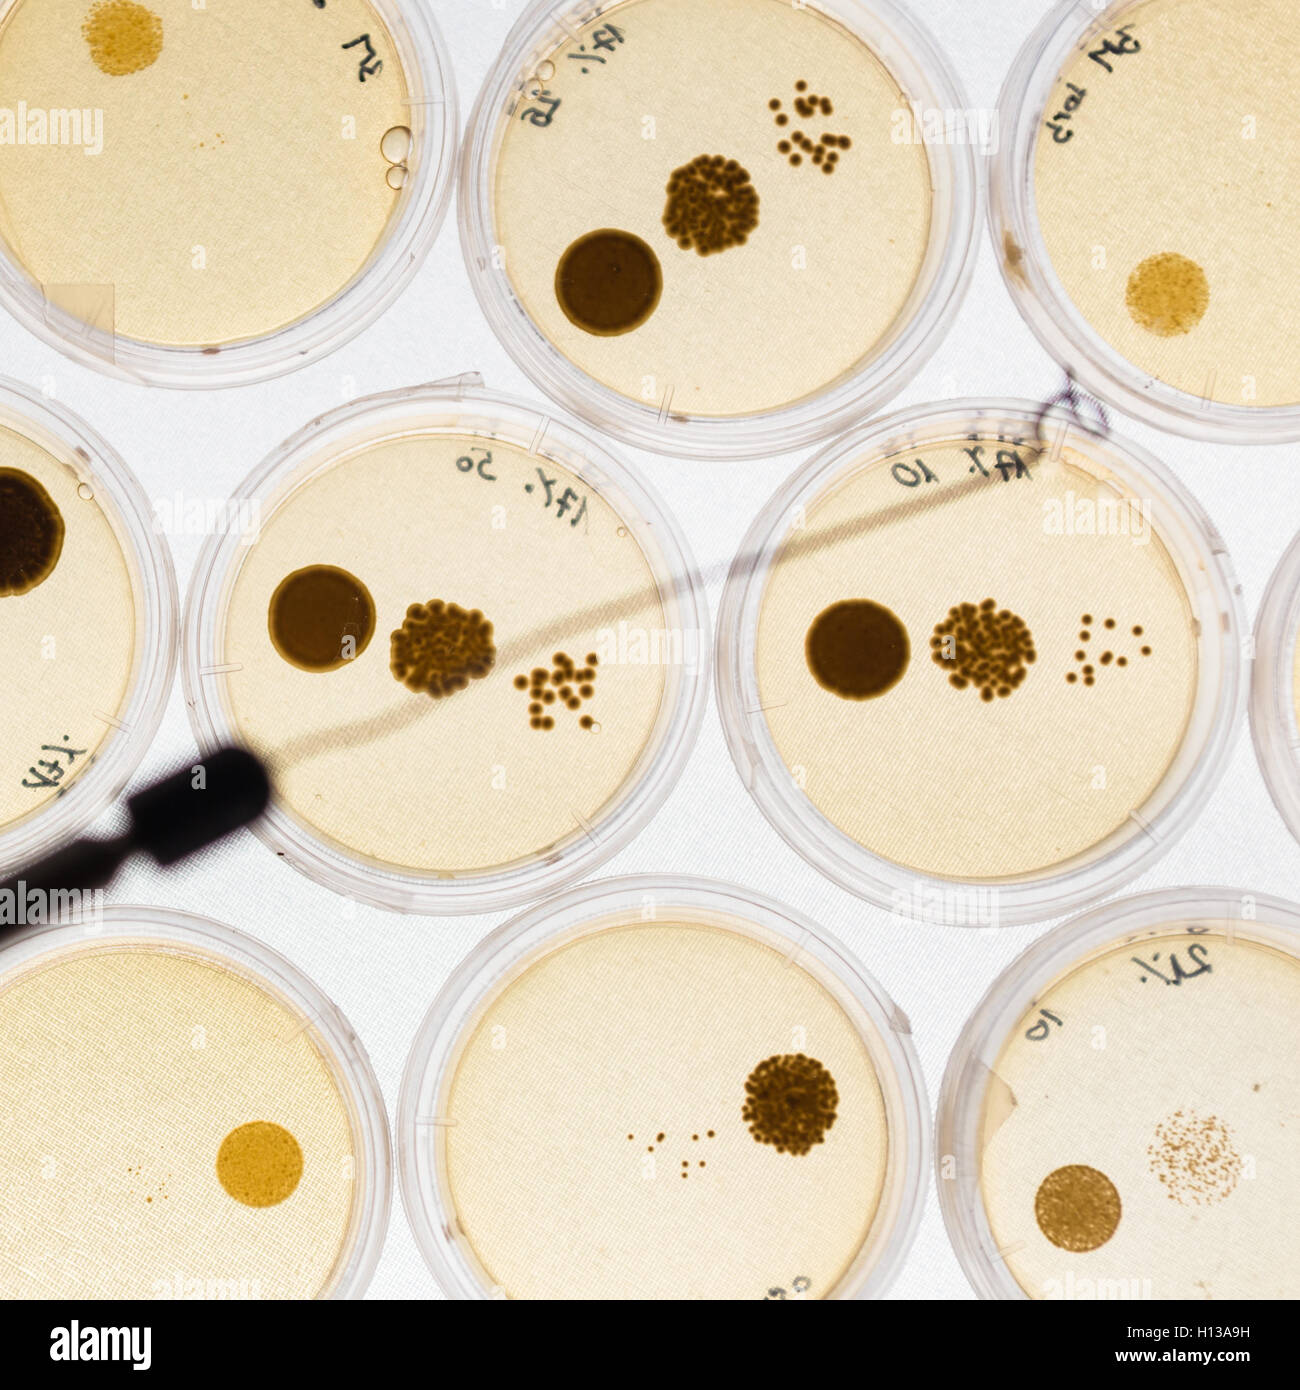 Crescere i batteri in capsule di Petri. Foto Stock